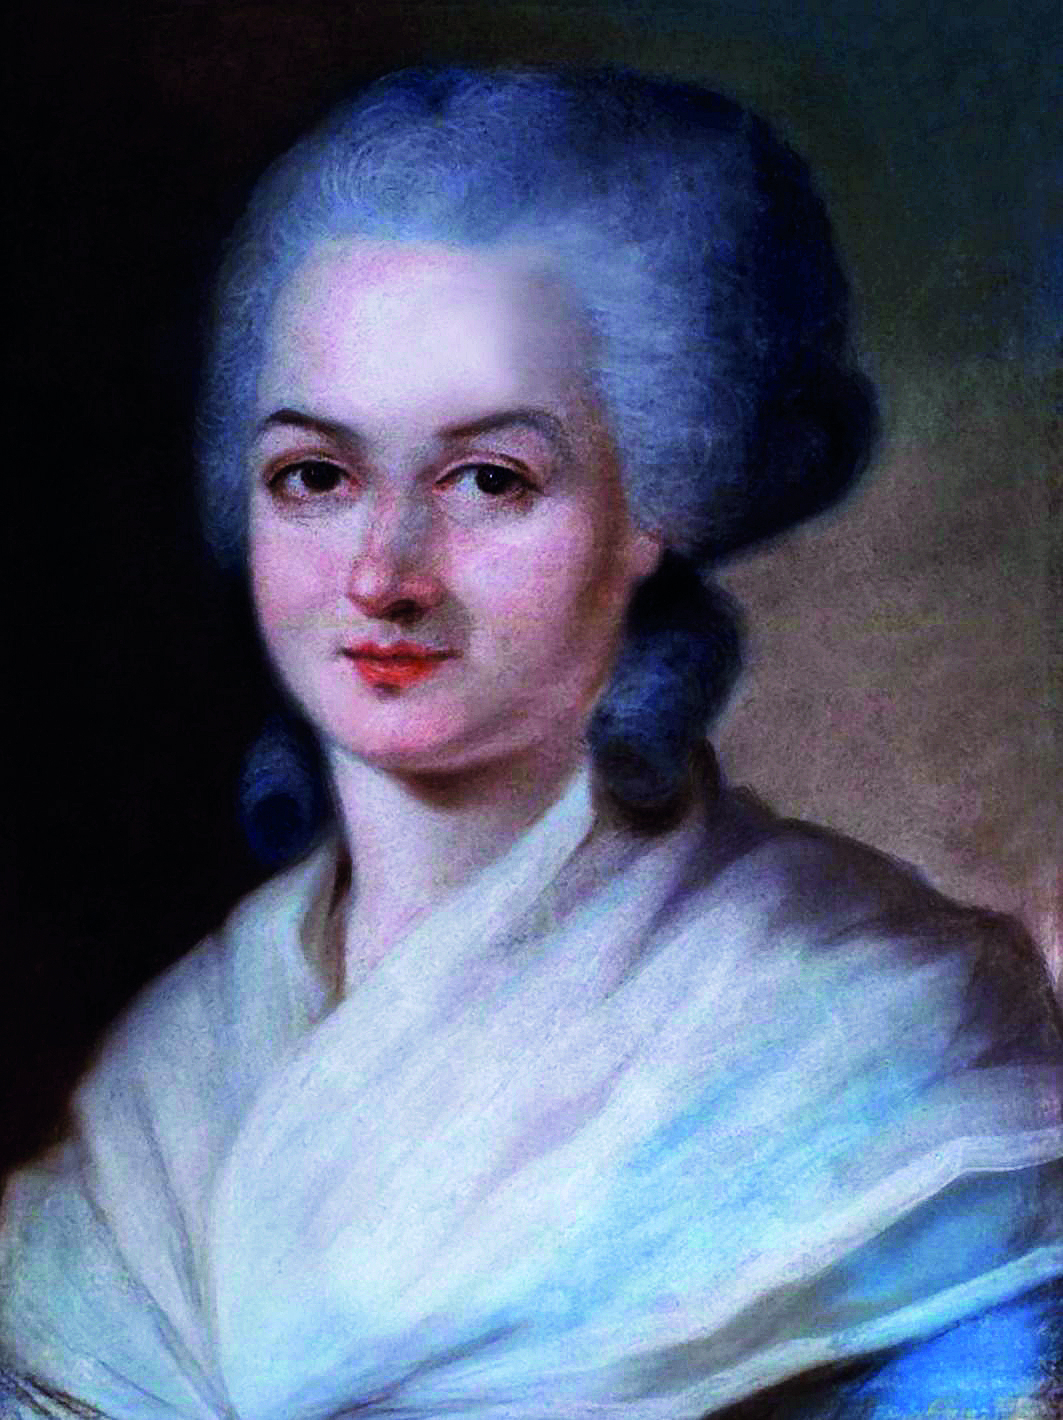 Pintura. Retrato de uma mulher branca de olhos castanhos, cabelos acinzentados e volumosos presos em um penteado, vestindo um lenço branco sobre seus ombros e peito. Seus olhos estão abertos e os lábios cerrados.